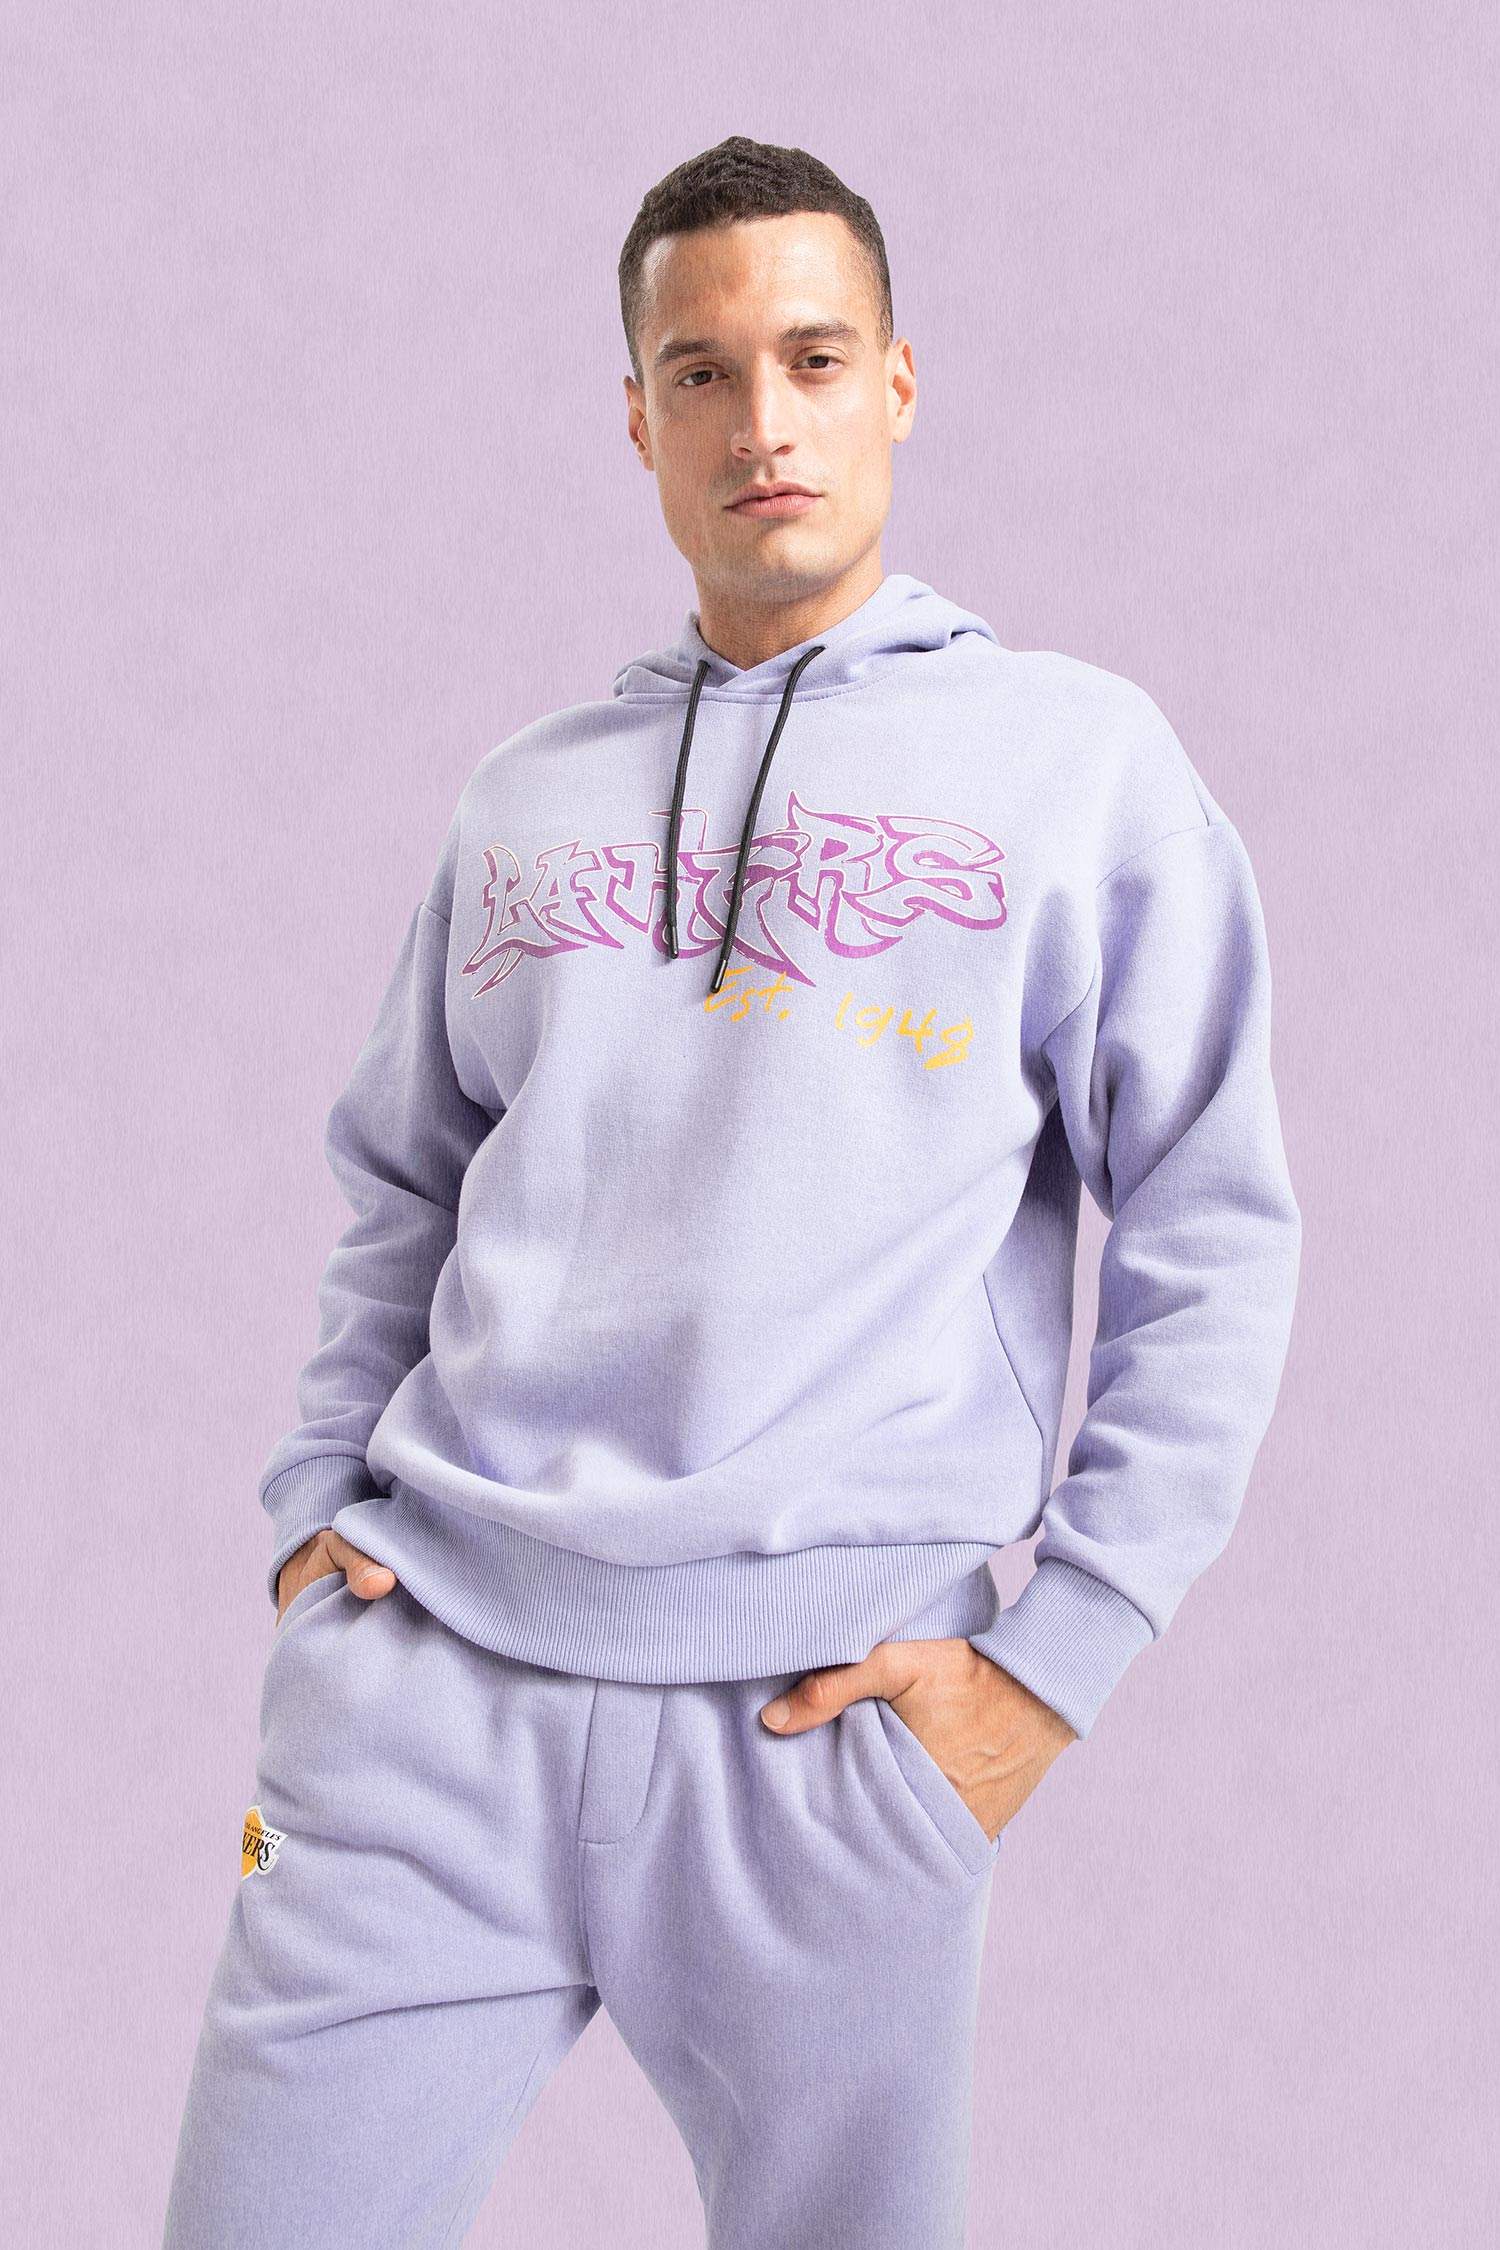 New Era Mens Los Angeles Lakers NBA Leopard Print Sweatshirt Hoodie - Grey